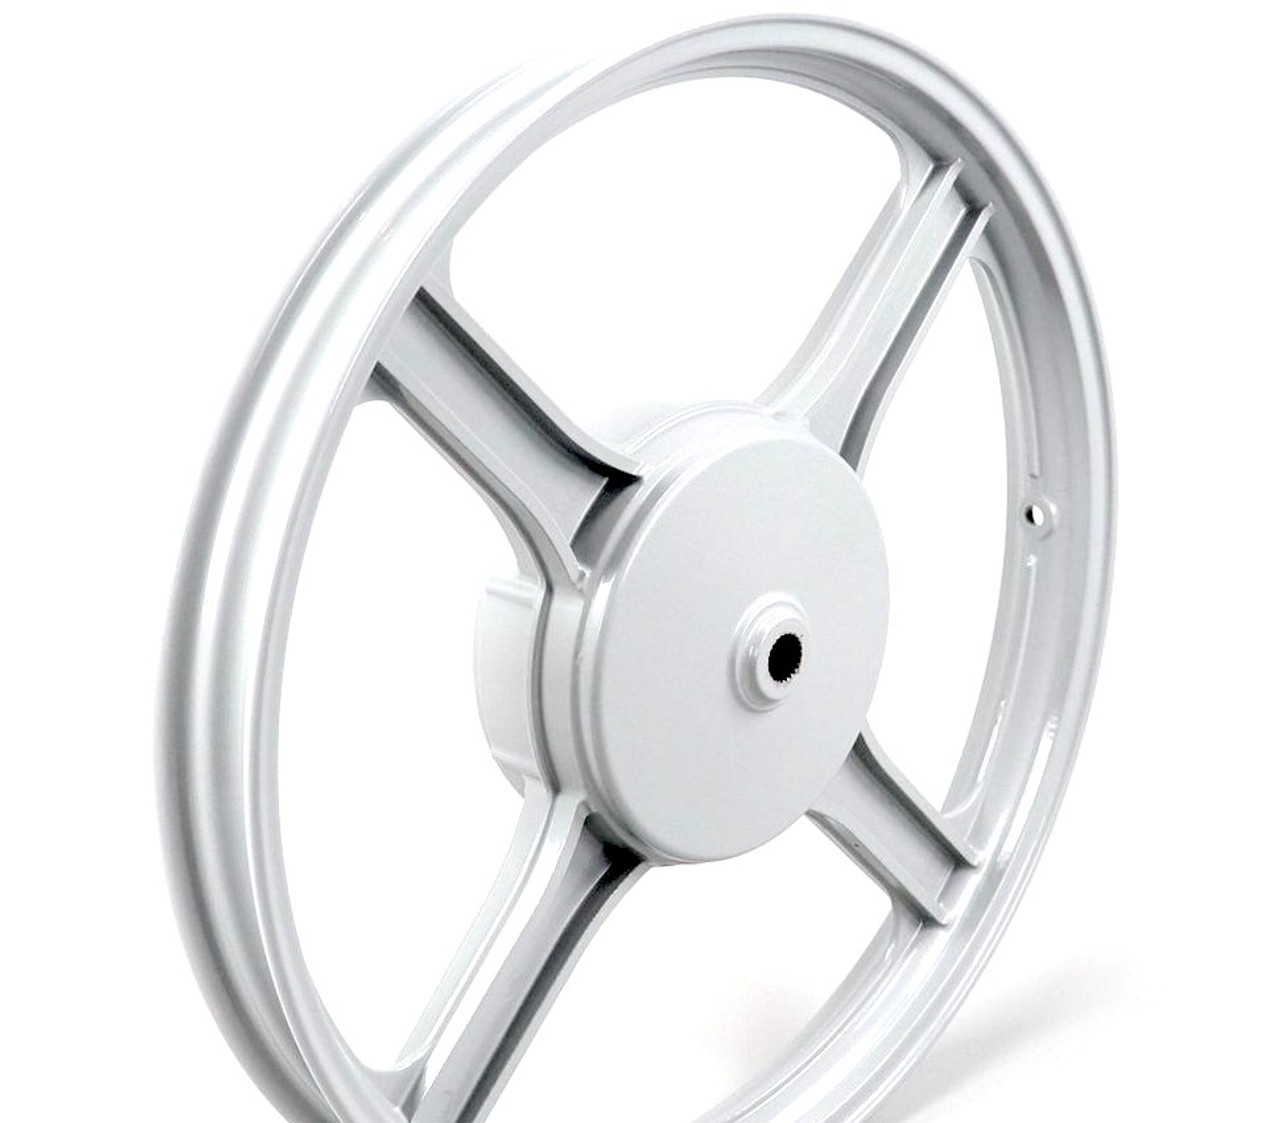  Piaggio Ciao / Si / Bravo 4 Star Mag Wheel Set - Grey